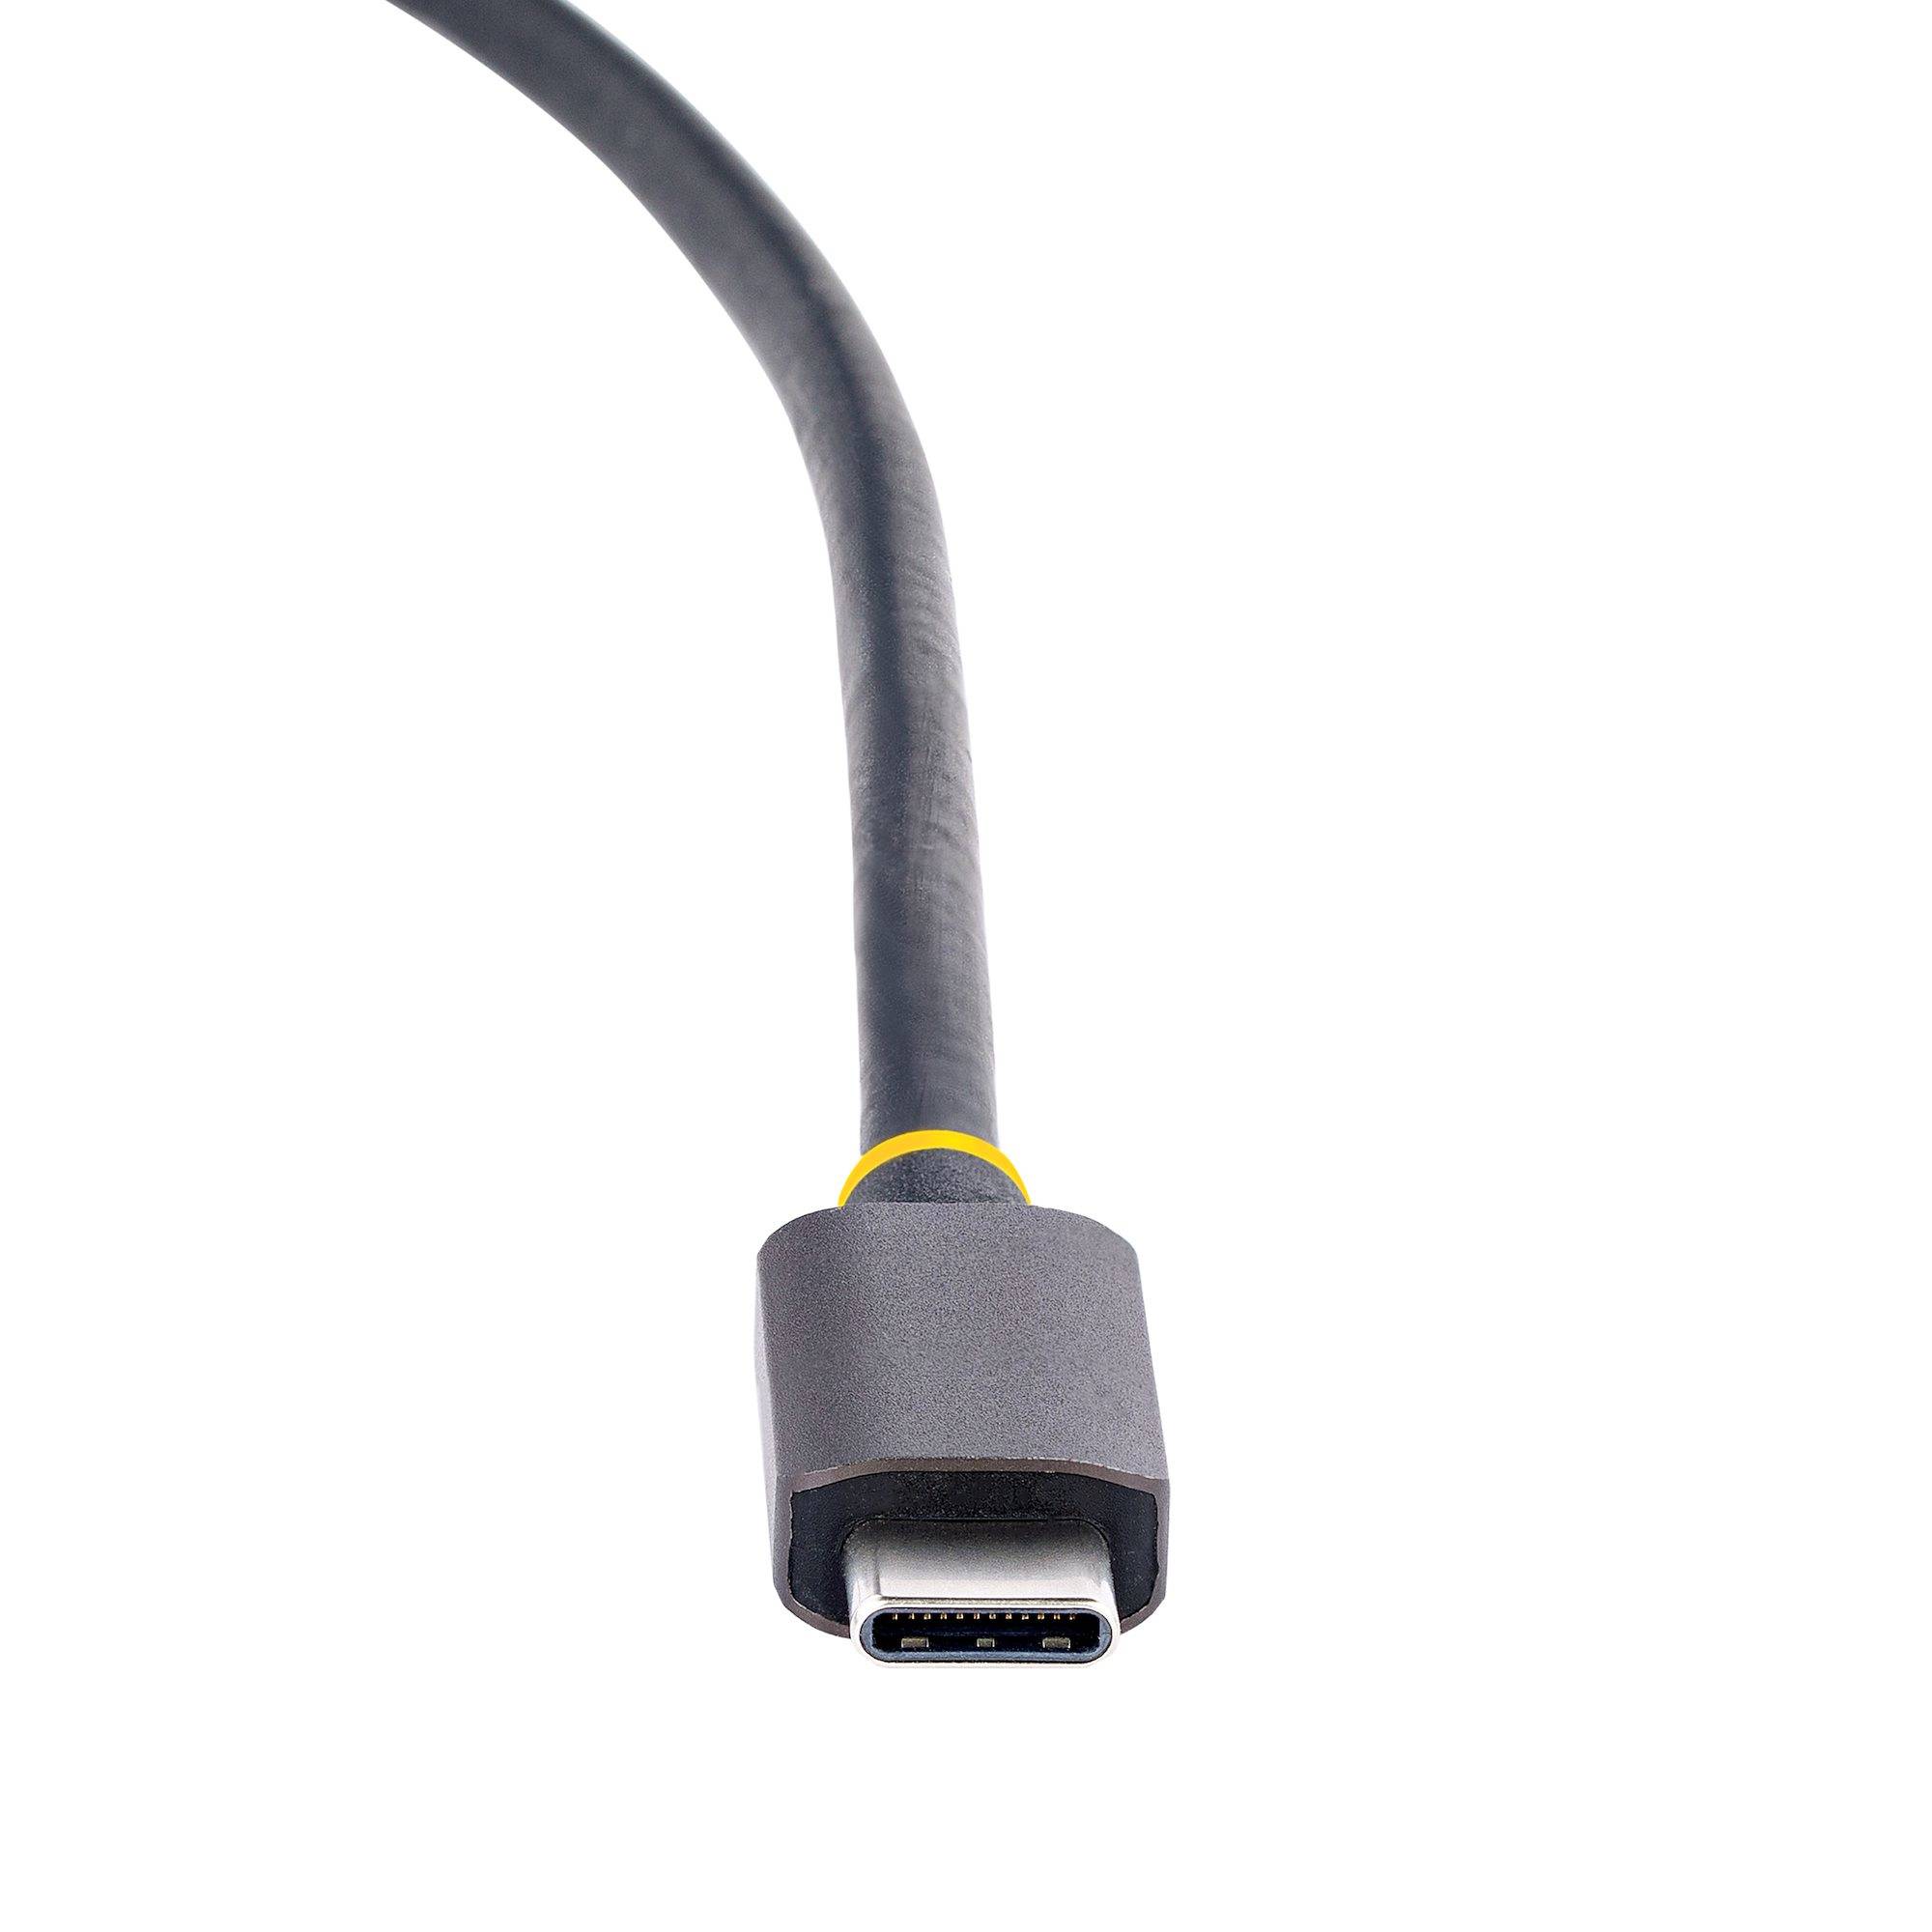 Rca Informatique - image du produit : USB C MULTIPORT ADAPTER DUAL HDMI 4K 60HZ 2PT 5GBPS USB-A